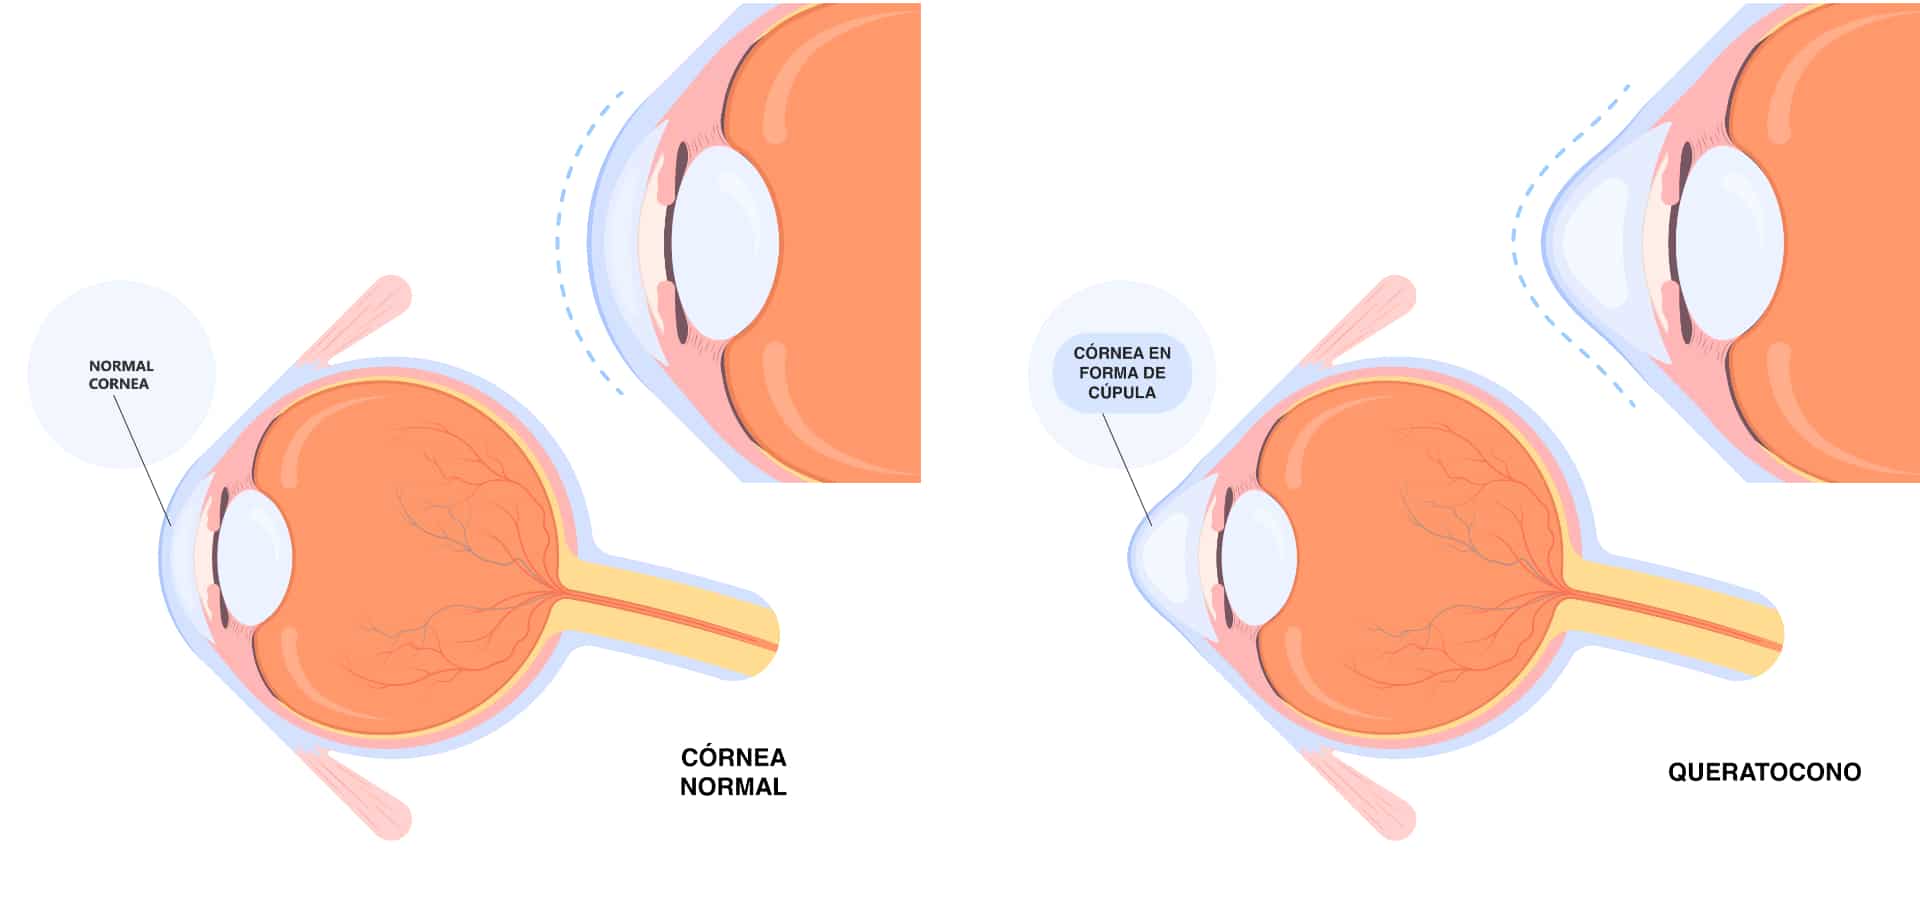 El crosslinking corneal evita la rápida progresión de enfermedades como el queratocono.